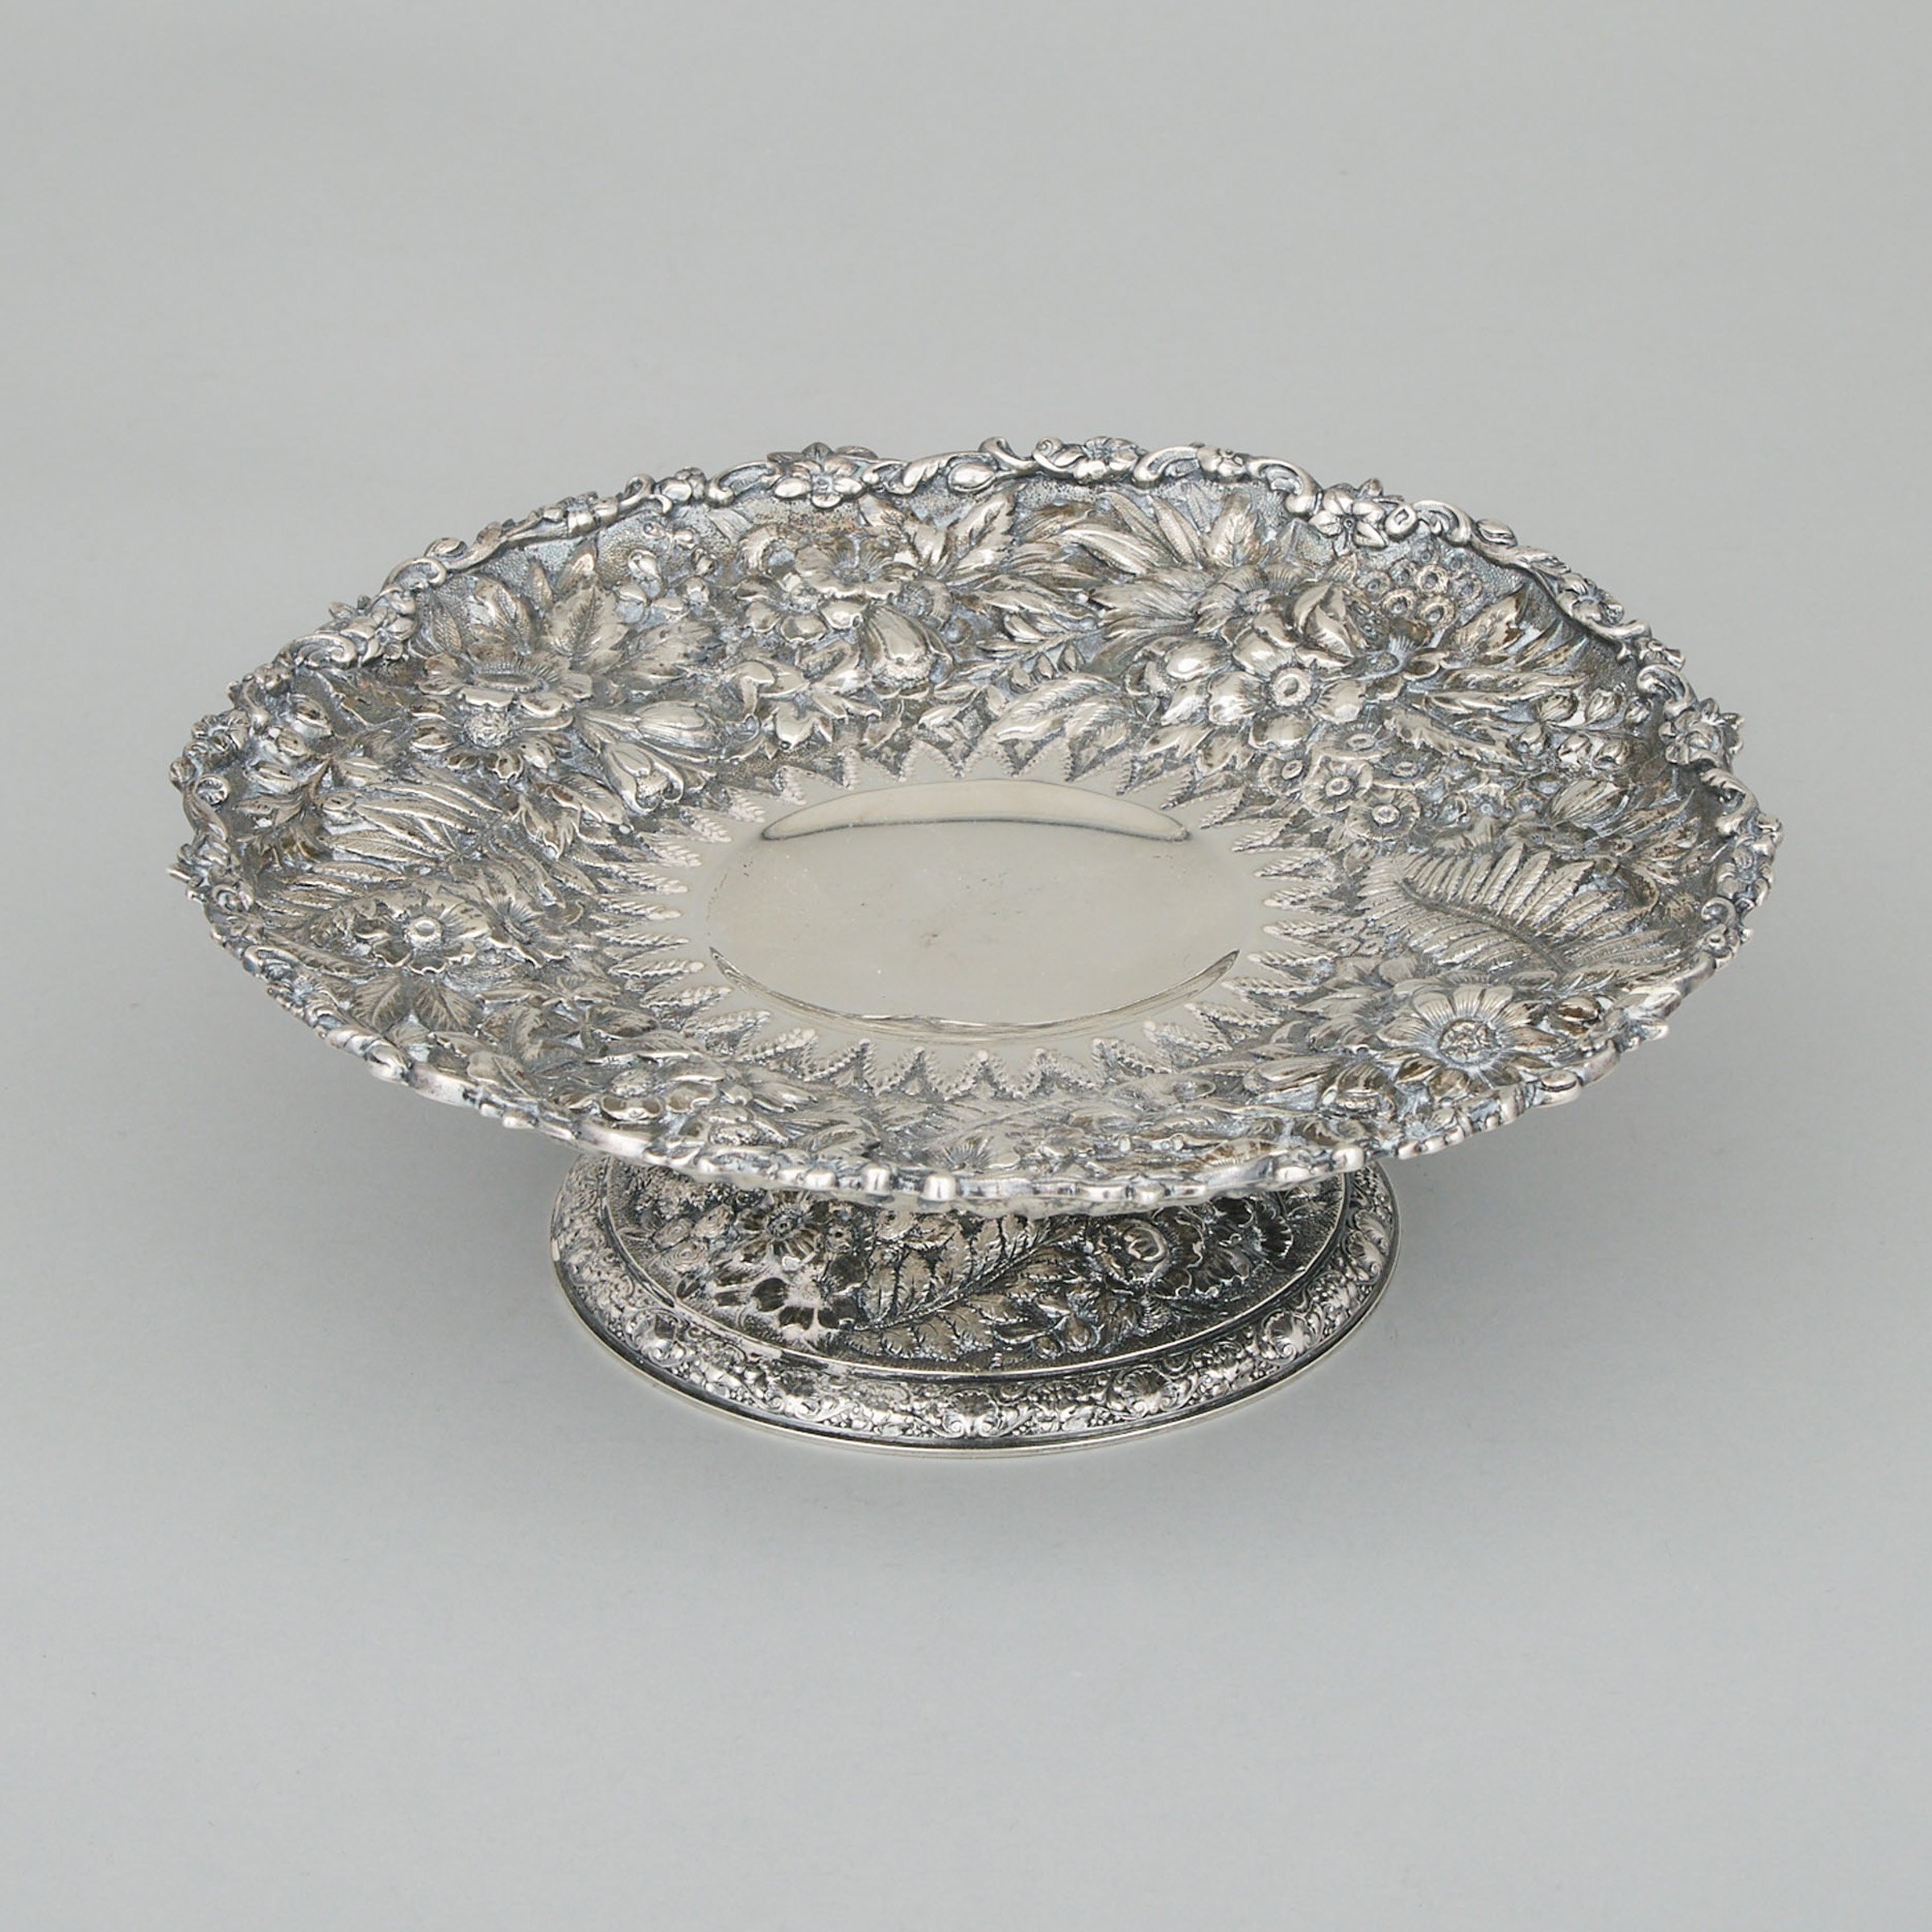 American Silver Comport, Tiffany & Co., New York, N.Y., c.1900